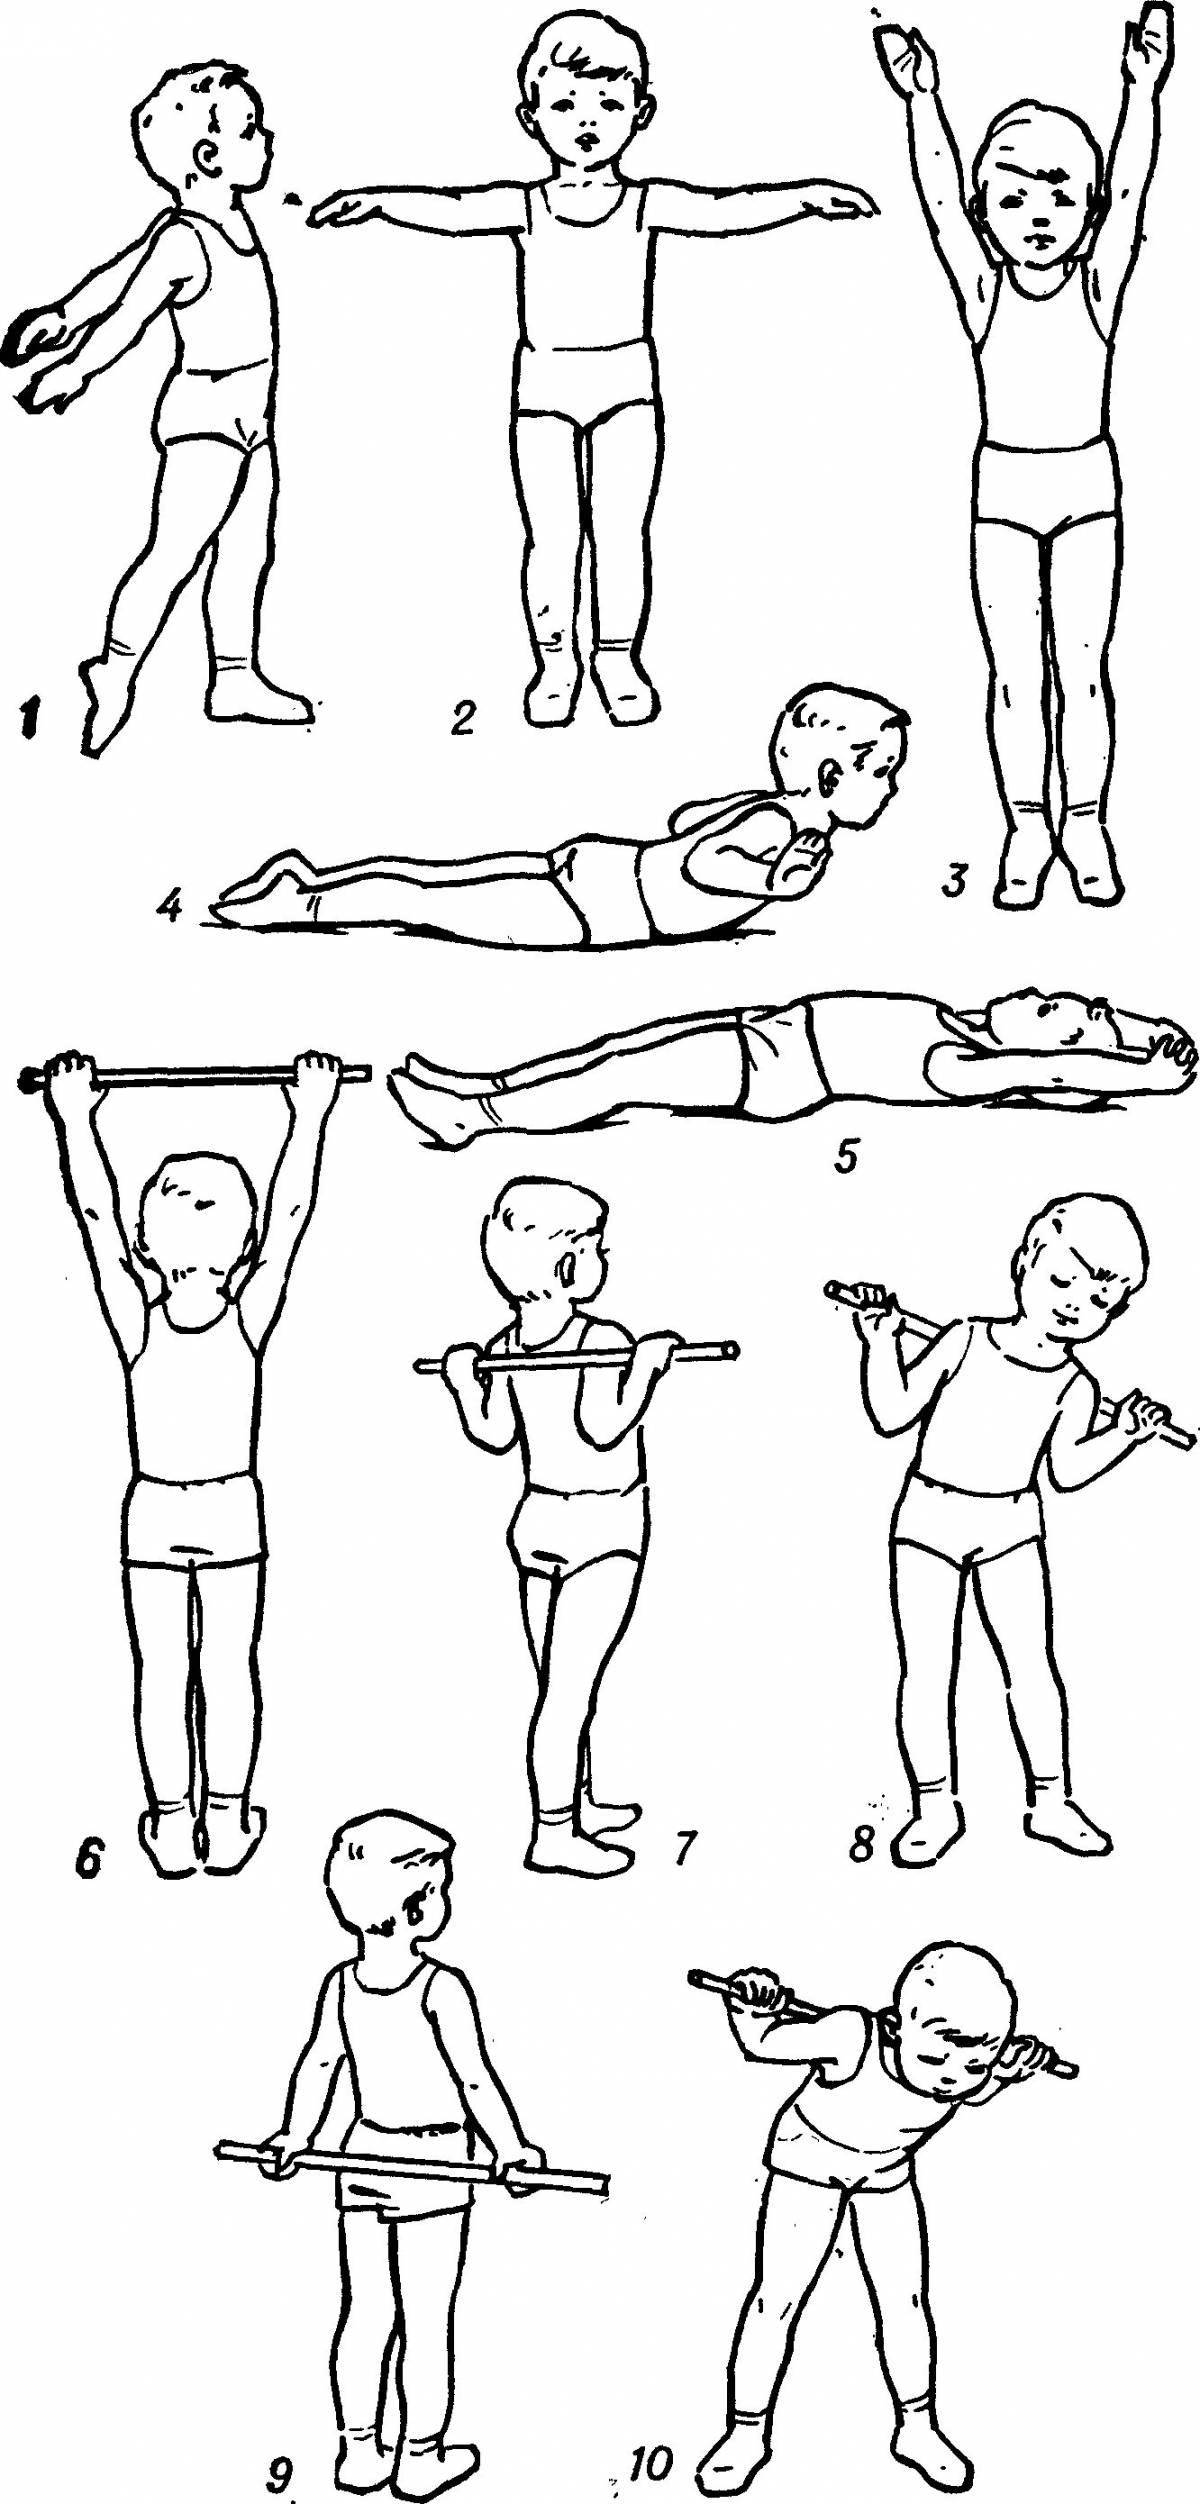 Morning exercises for kids #2